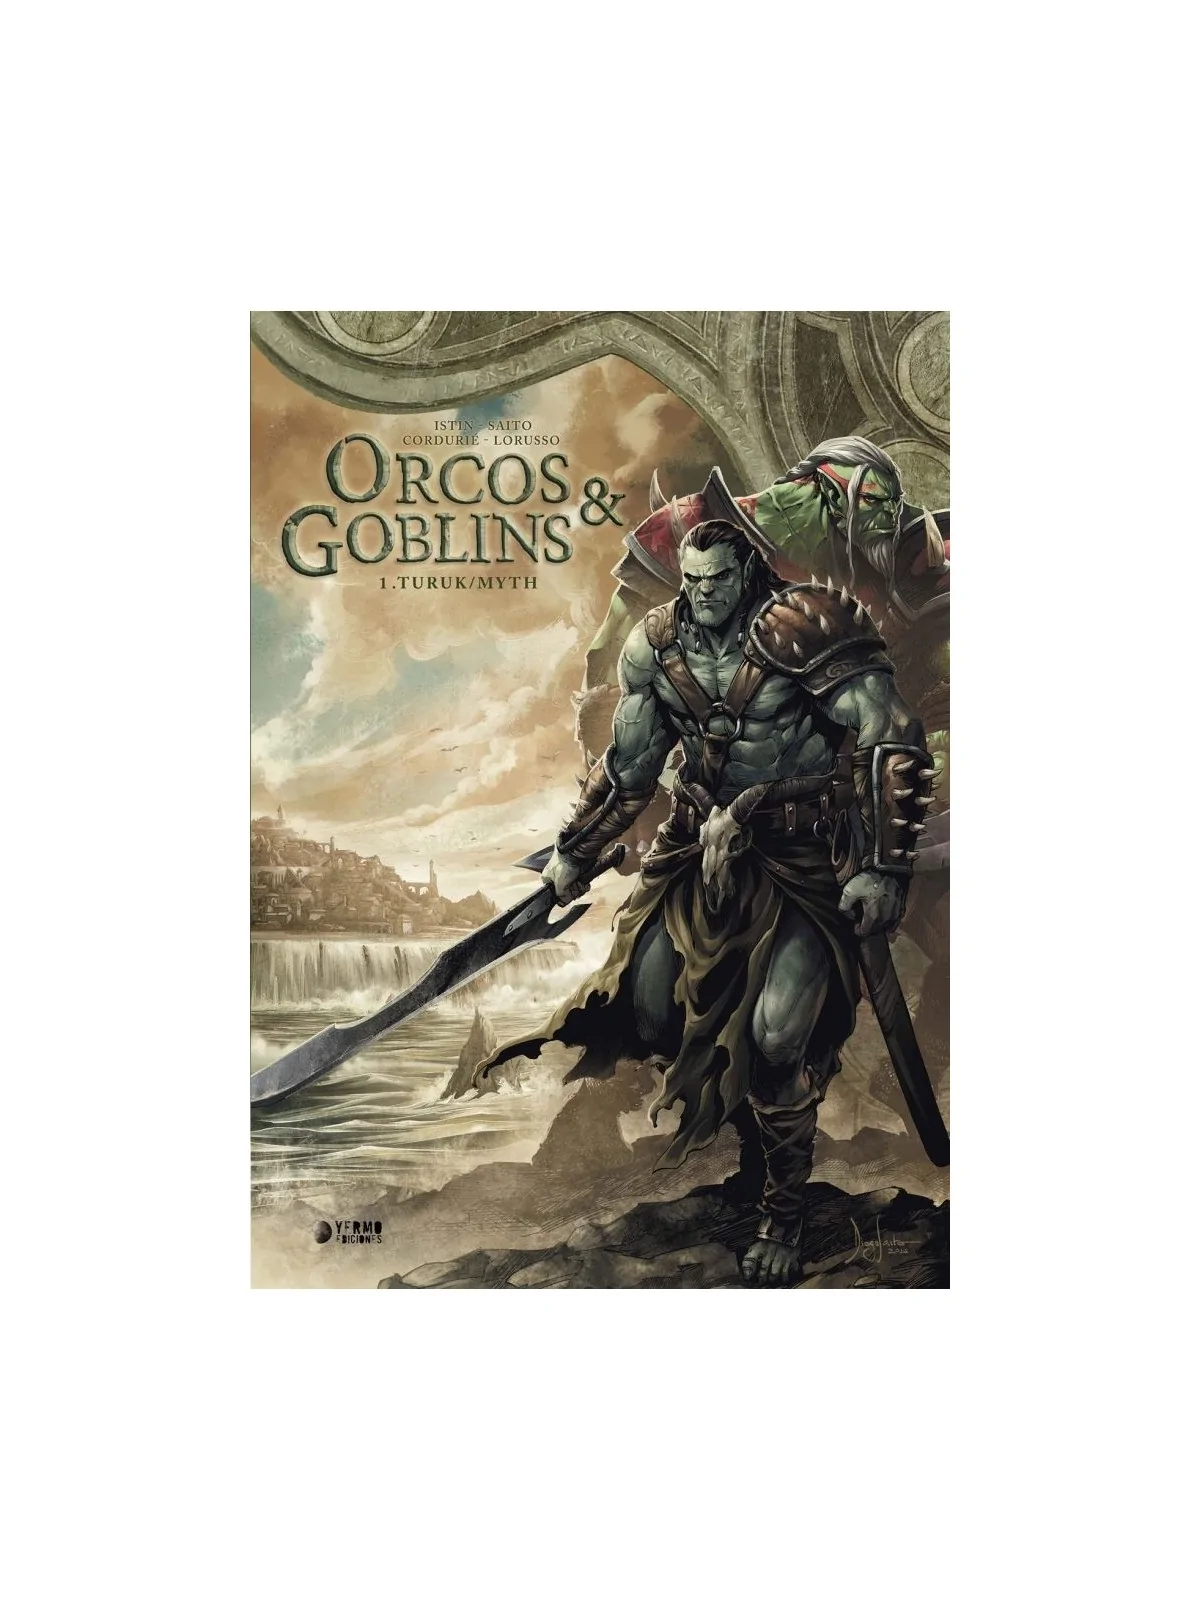 Comprar Orcos y Goblins 01: Turuk/MYTH barato al mejor precio 23,75 € 